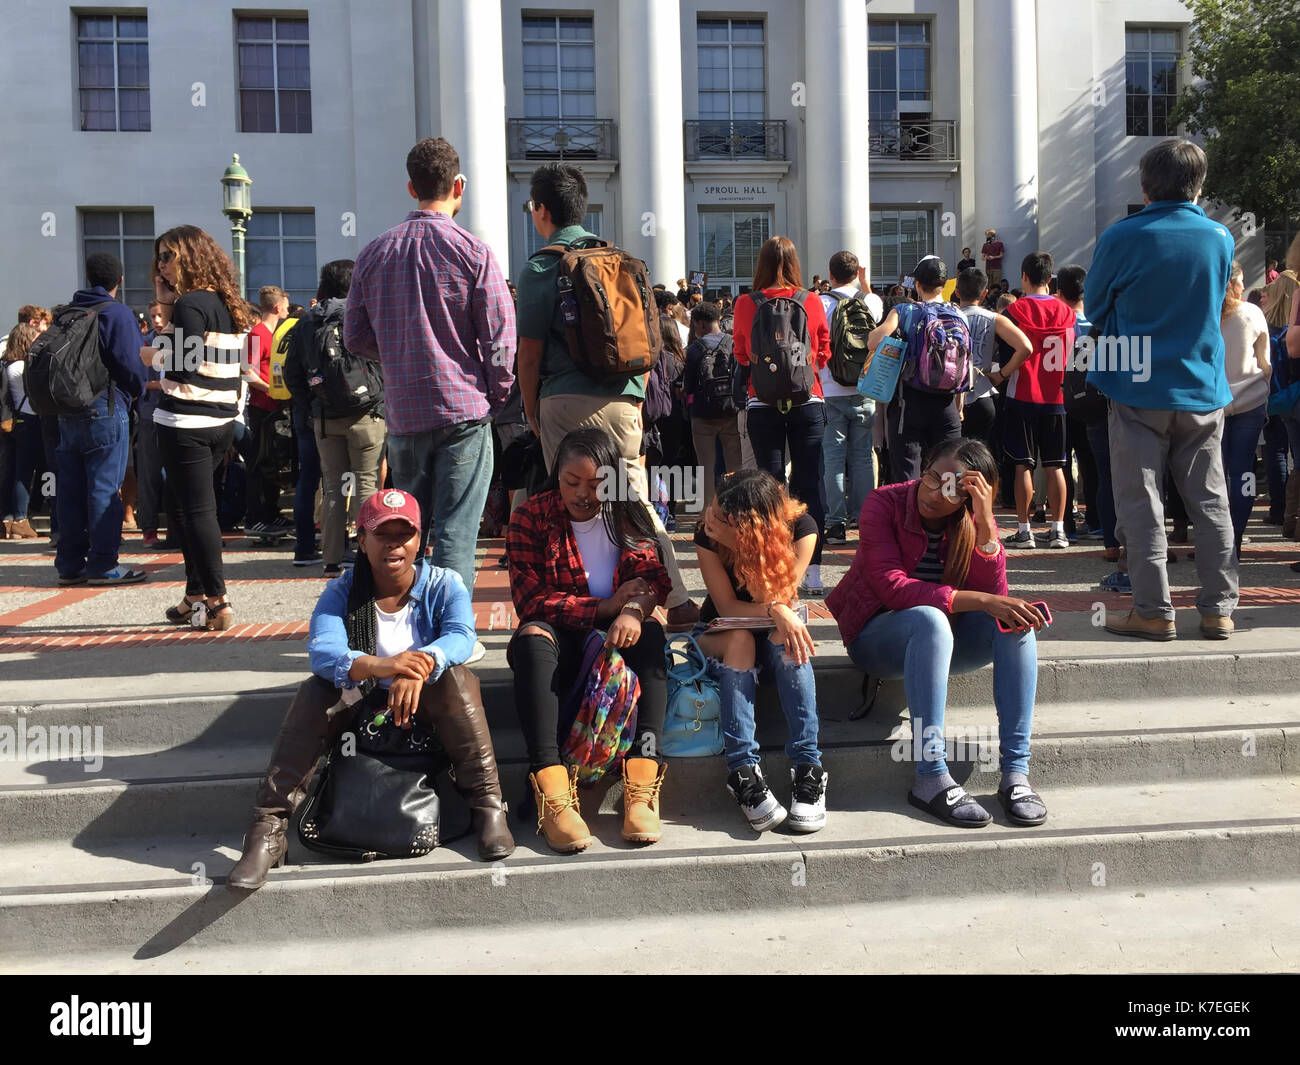 Les élèves du secondaire de Berkeley a protesté contre les menaces racistes trouvés à la bibliothèque de l'école. Les étudiants ont défilé pacifiquement à l'UC Berkeley campus, illustré ici. Banque D'Images